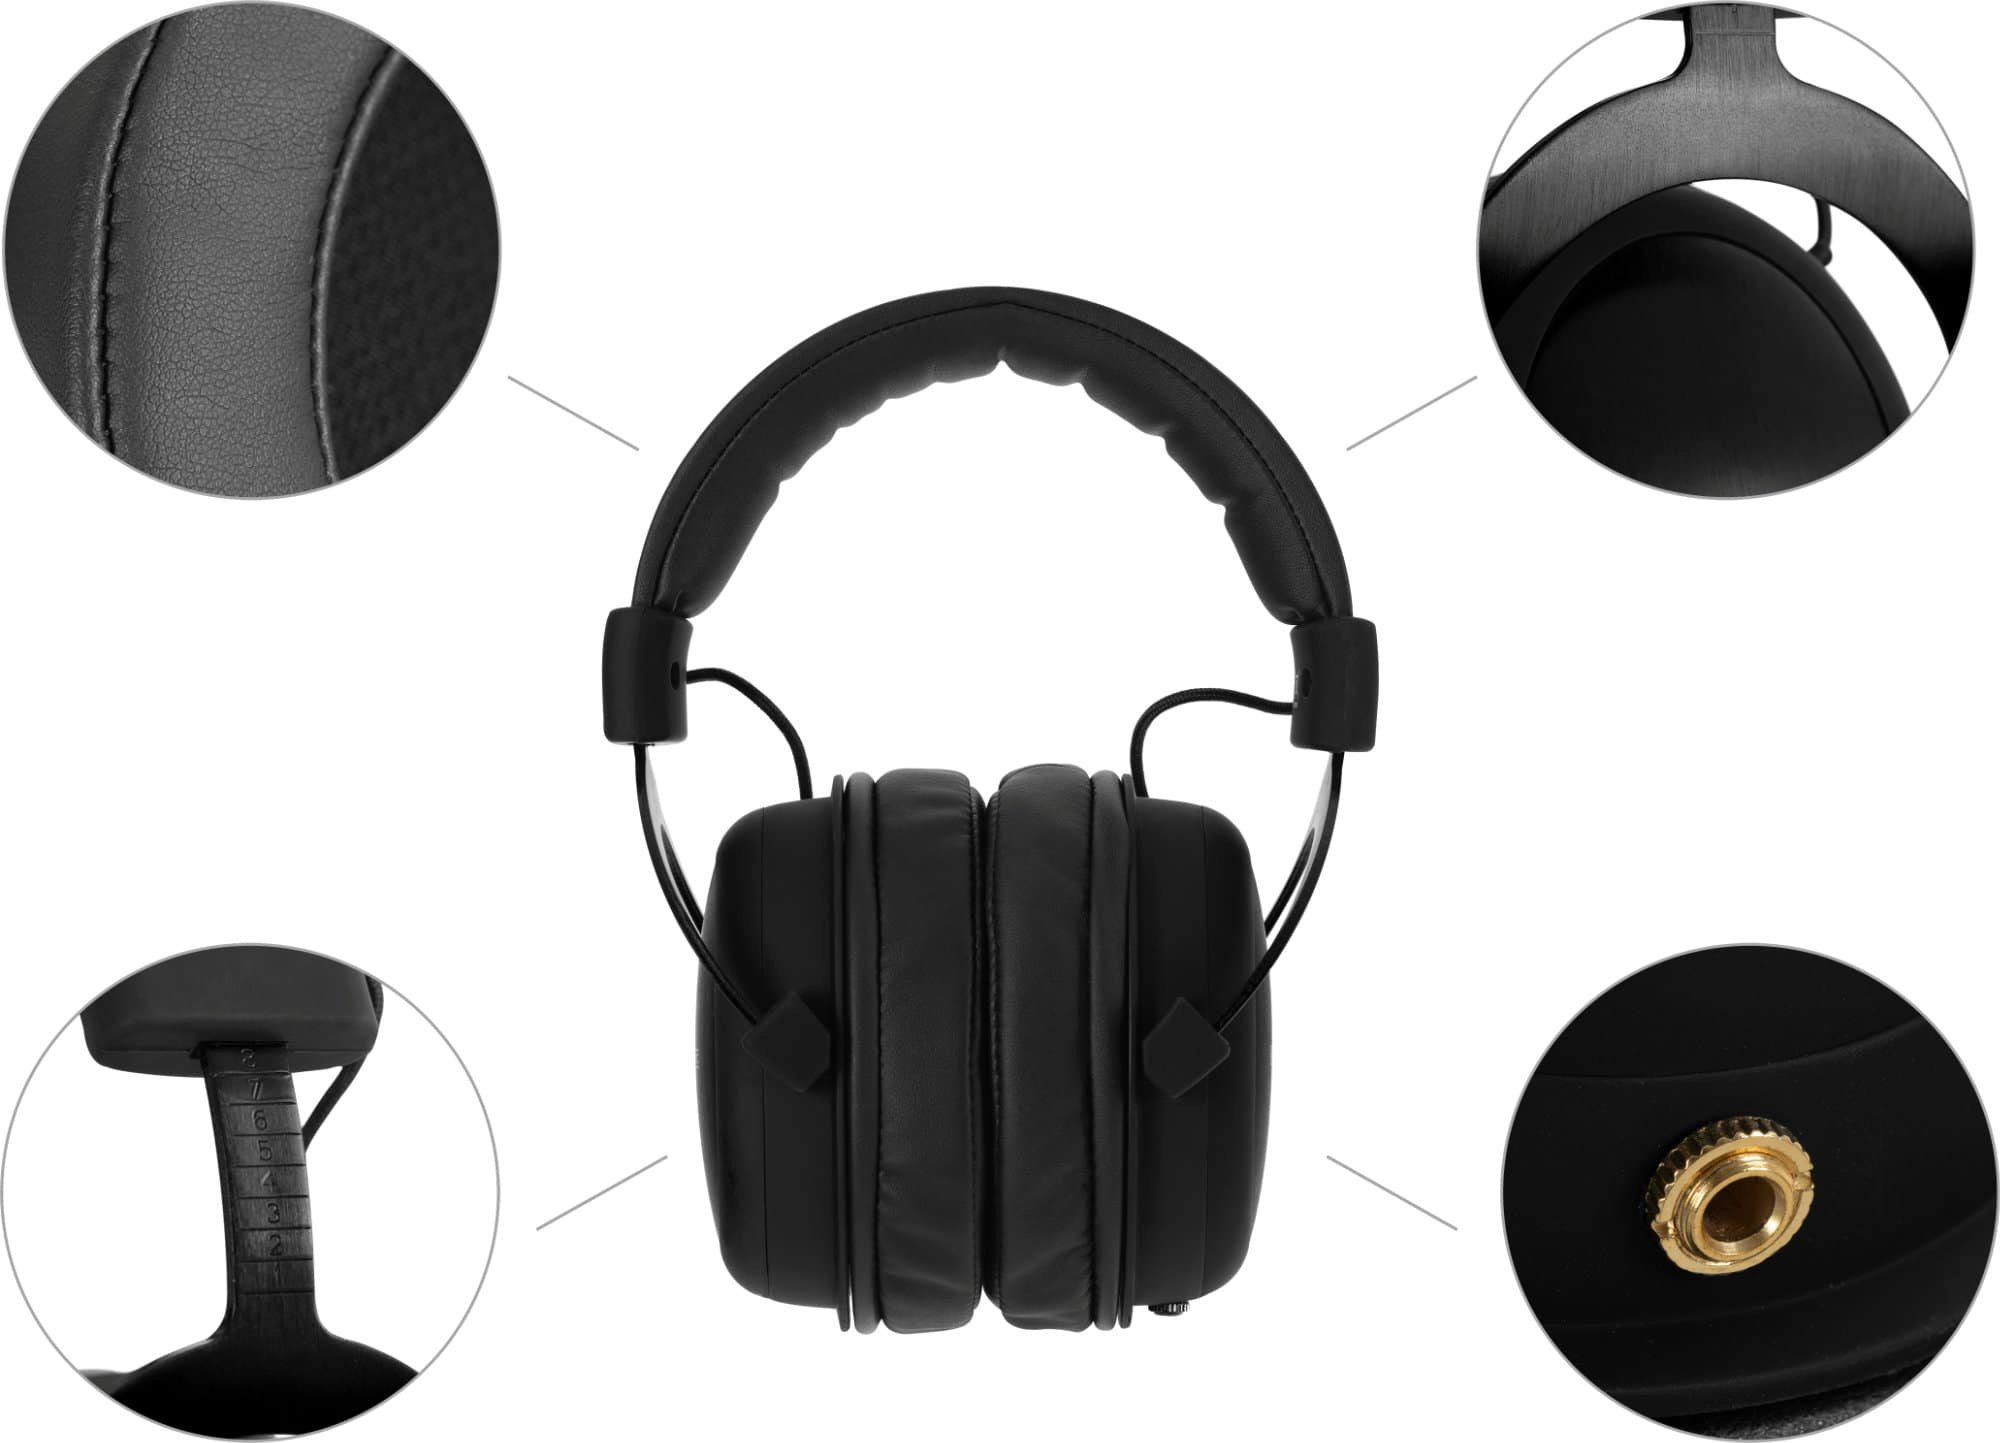 (ausgewogener Pronomic brillanten Höhen hohem mit und Klang Tragekomfort Bässen) mit Schwarz HiFi-Kopfhörer Studio-Kopfhörer präzisen